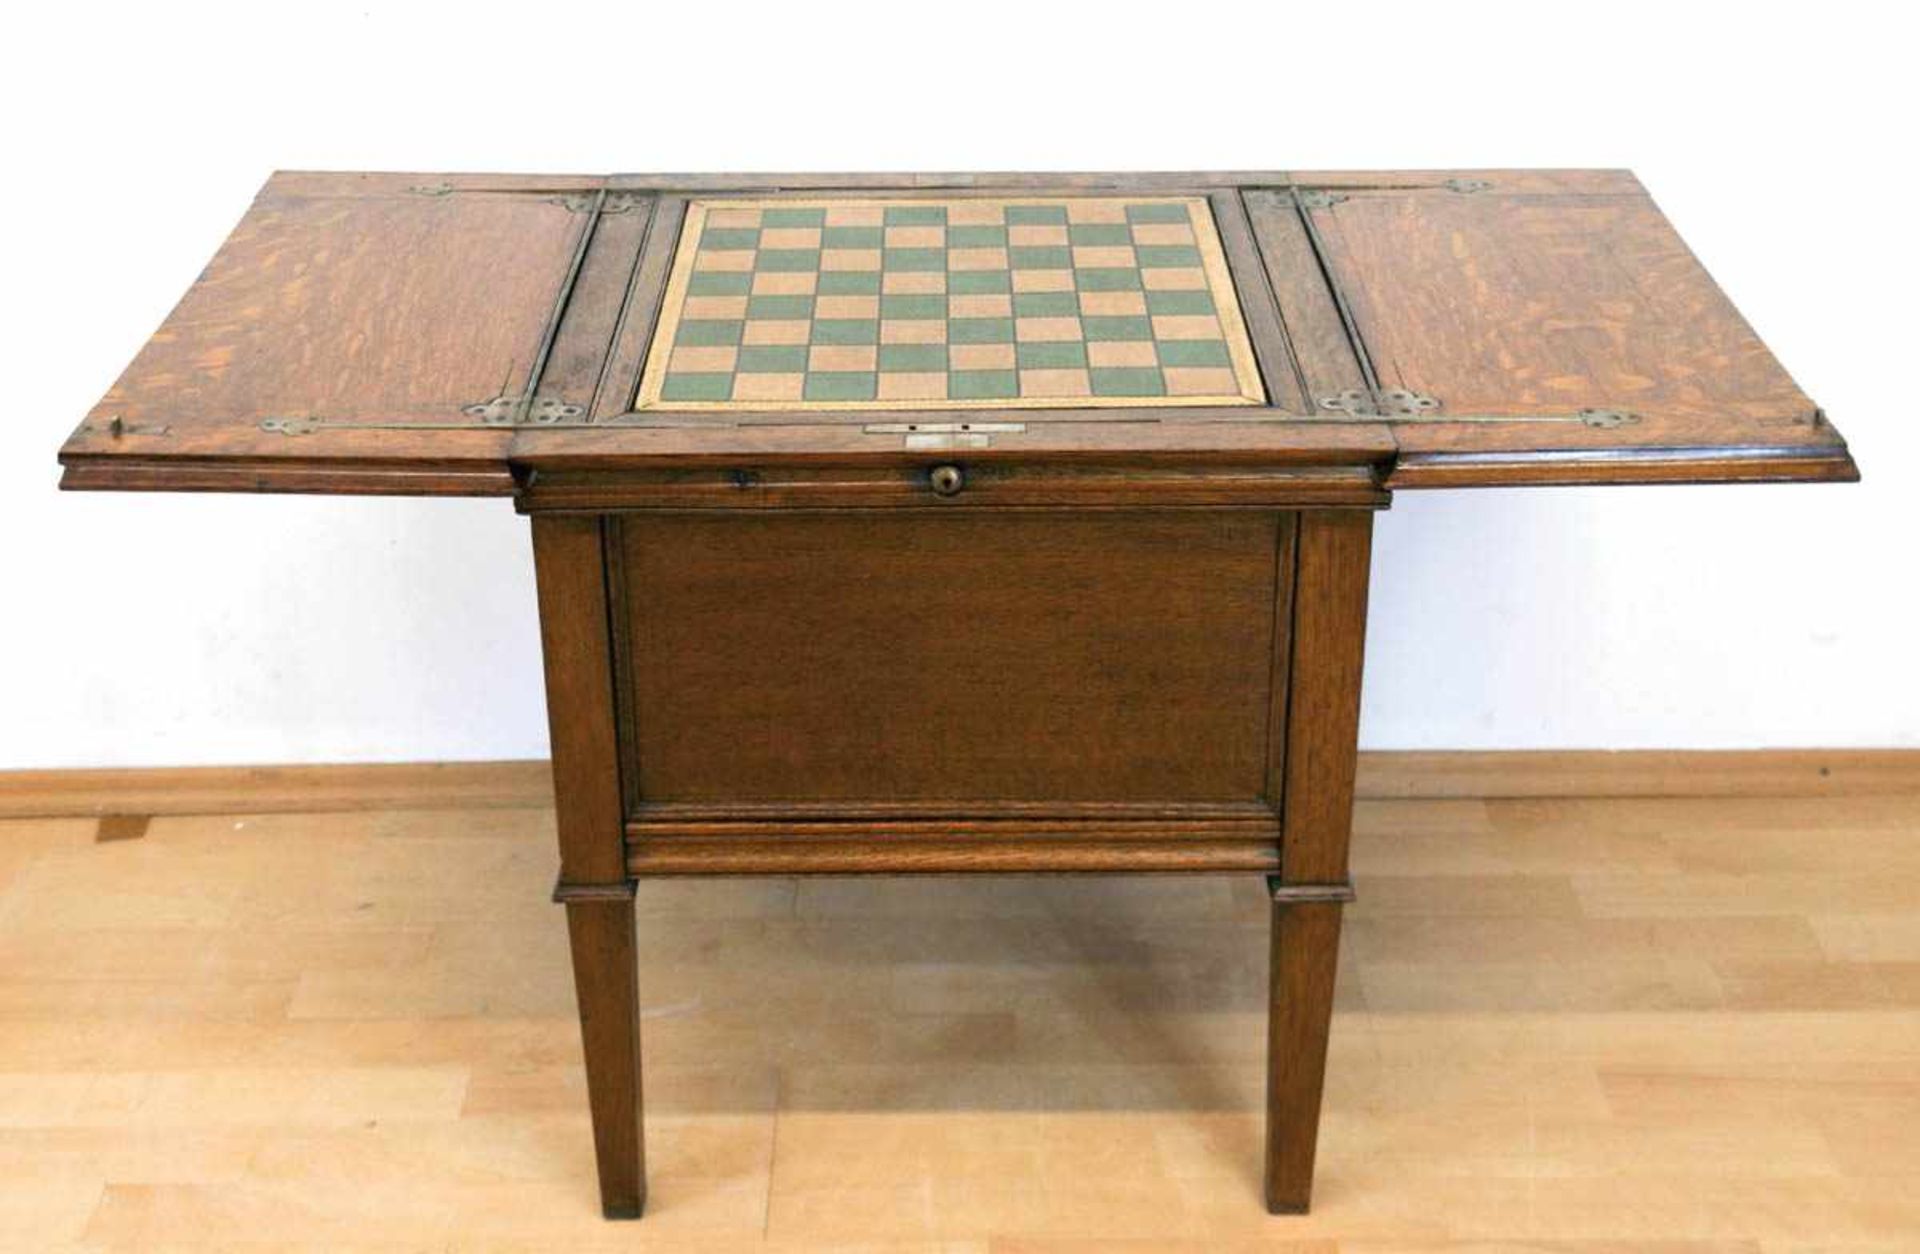 Patent-Spieltisch, England, Eiche, mittig mit Schachbrettmuster auf Ledereinlage, wirddurch - Bild 3 aus 3